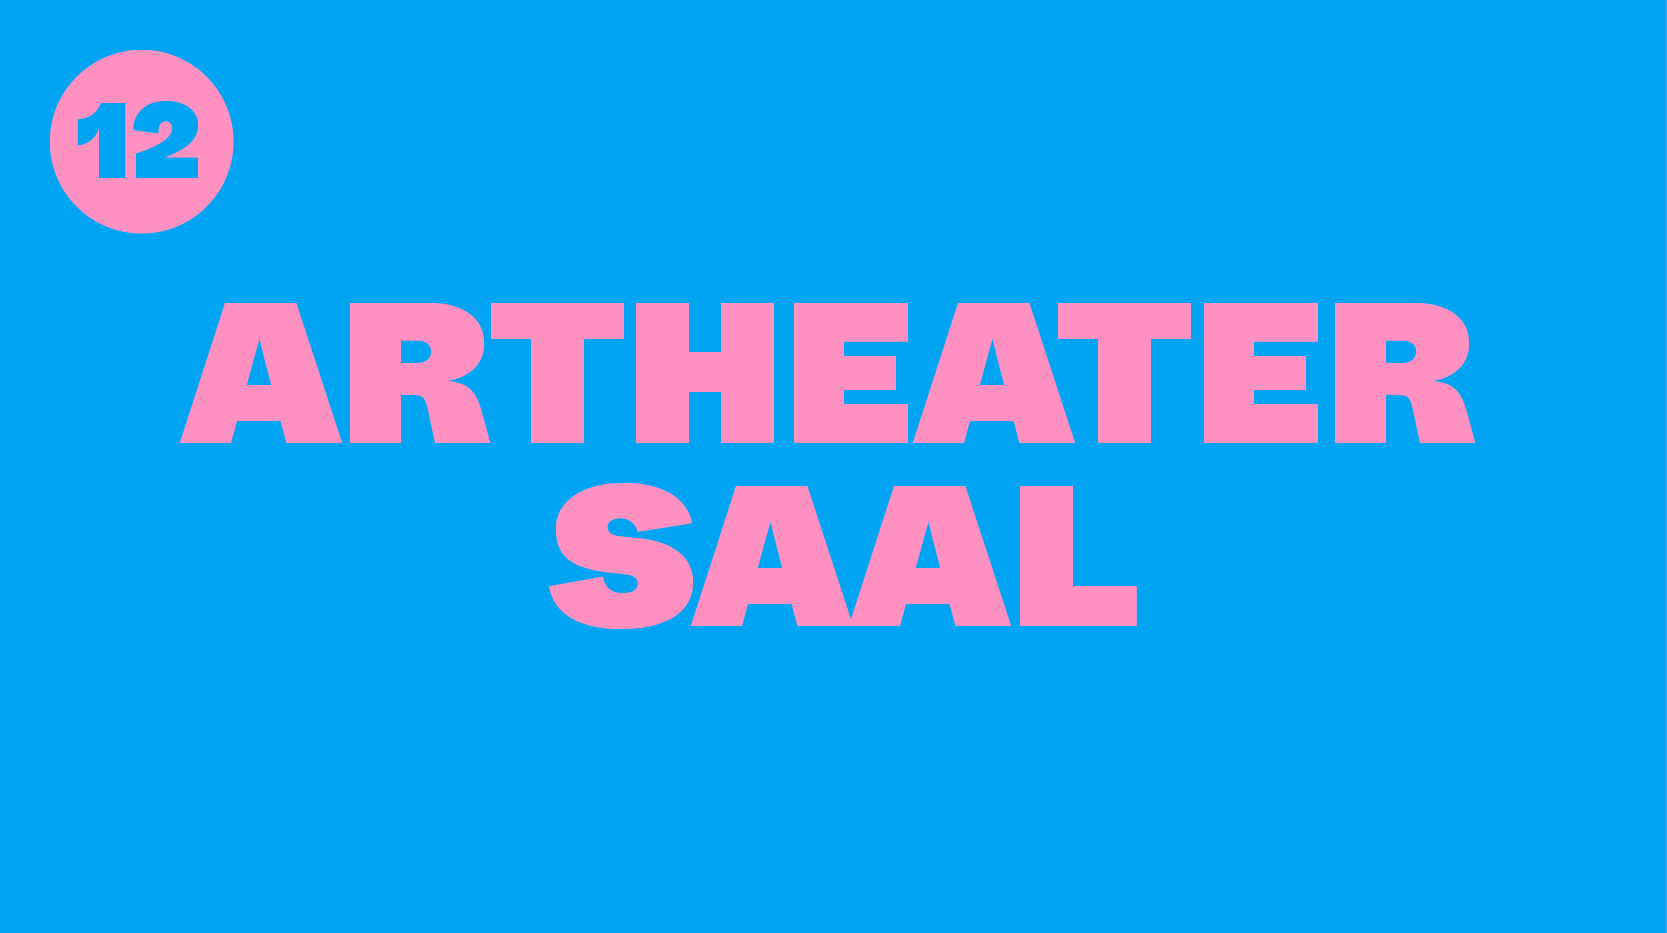 artheater Saal